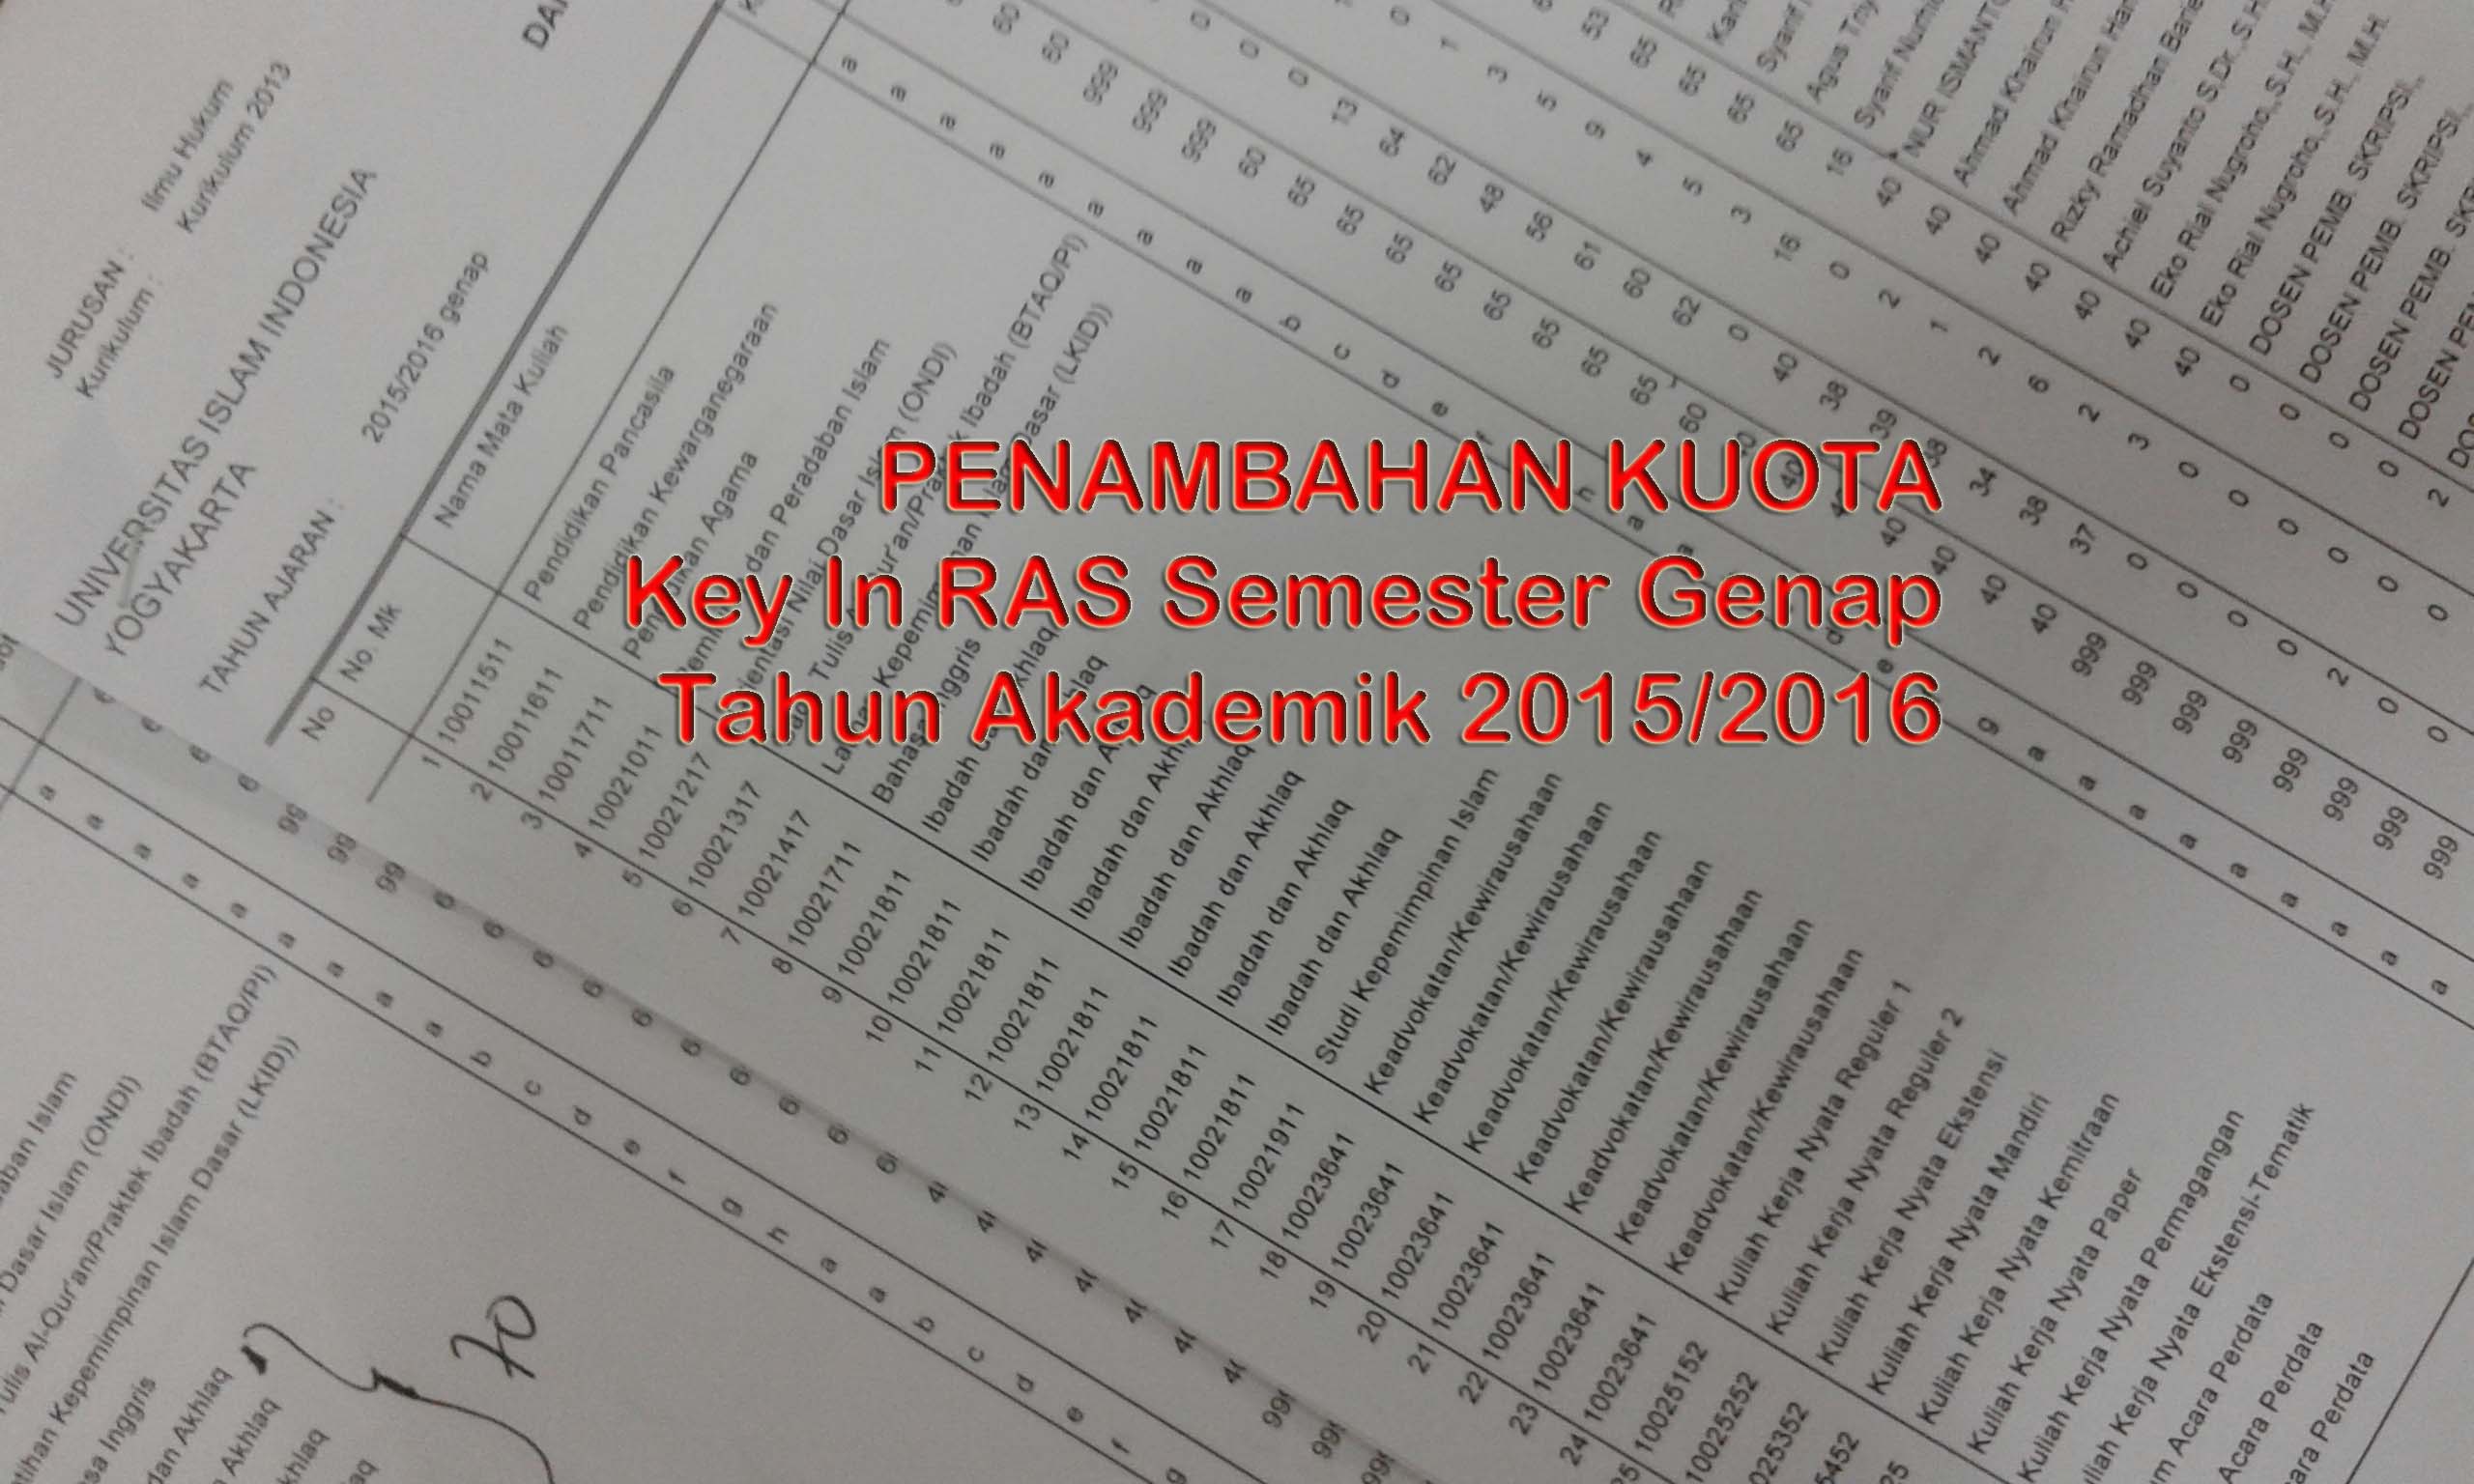 info-penambahan-kuota-genap-2015-2016